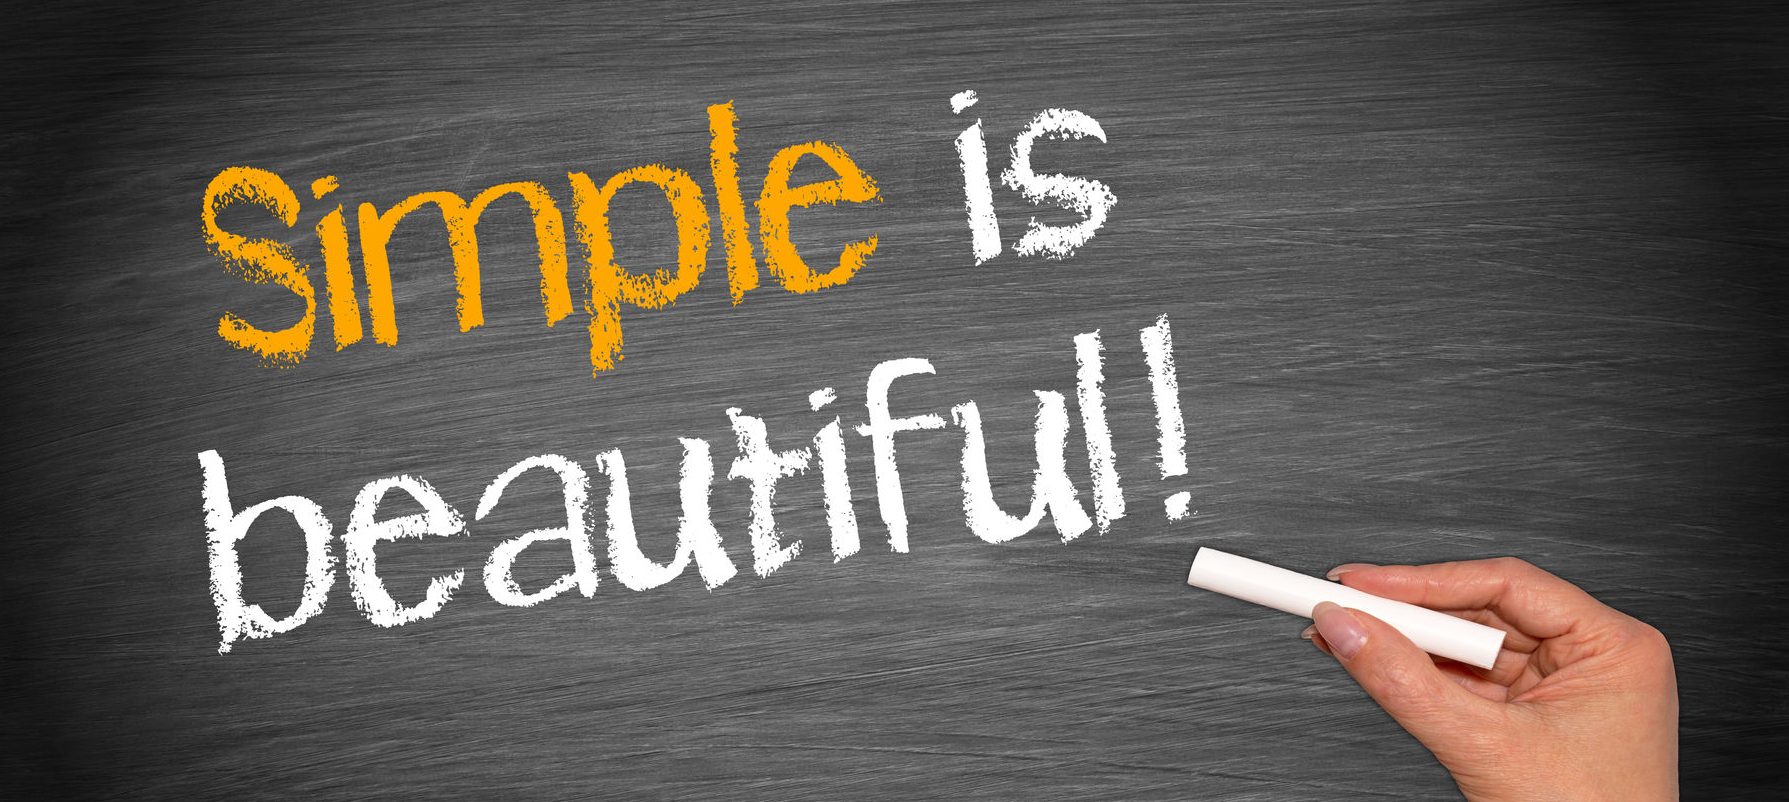 Картинки simple. Beauty is simple. Keep it simple картинки.